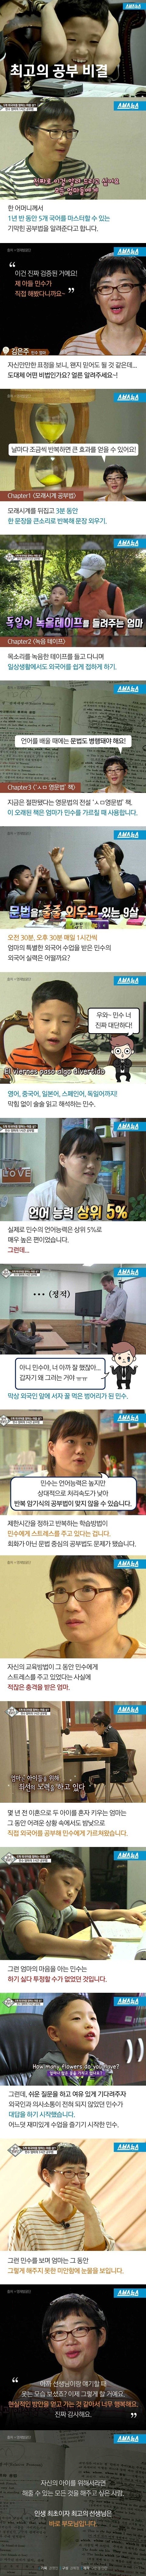 한국에서 영어공부 10년씩해도 외국인과 소통이 안되는 이유